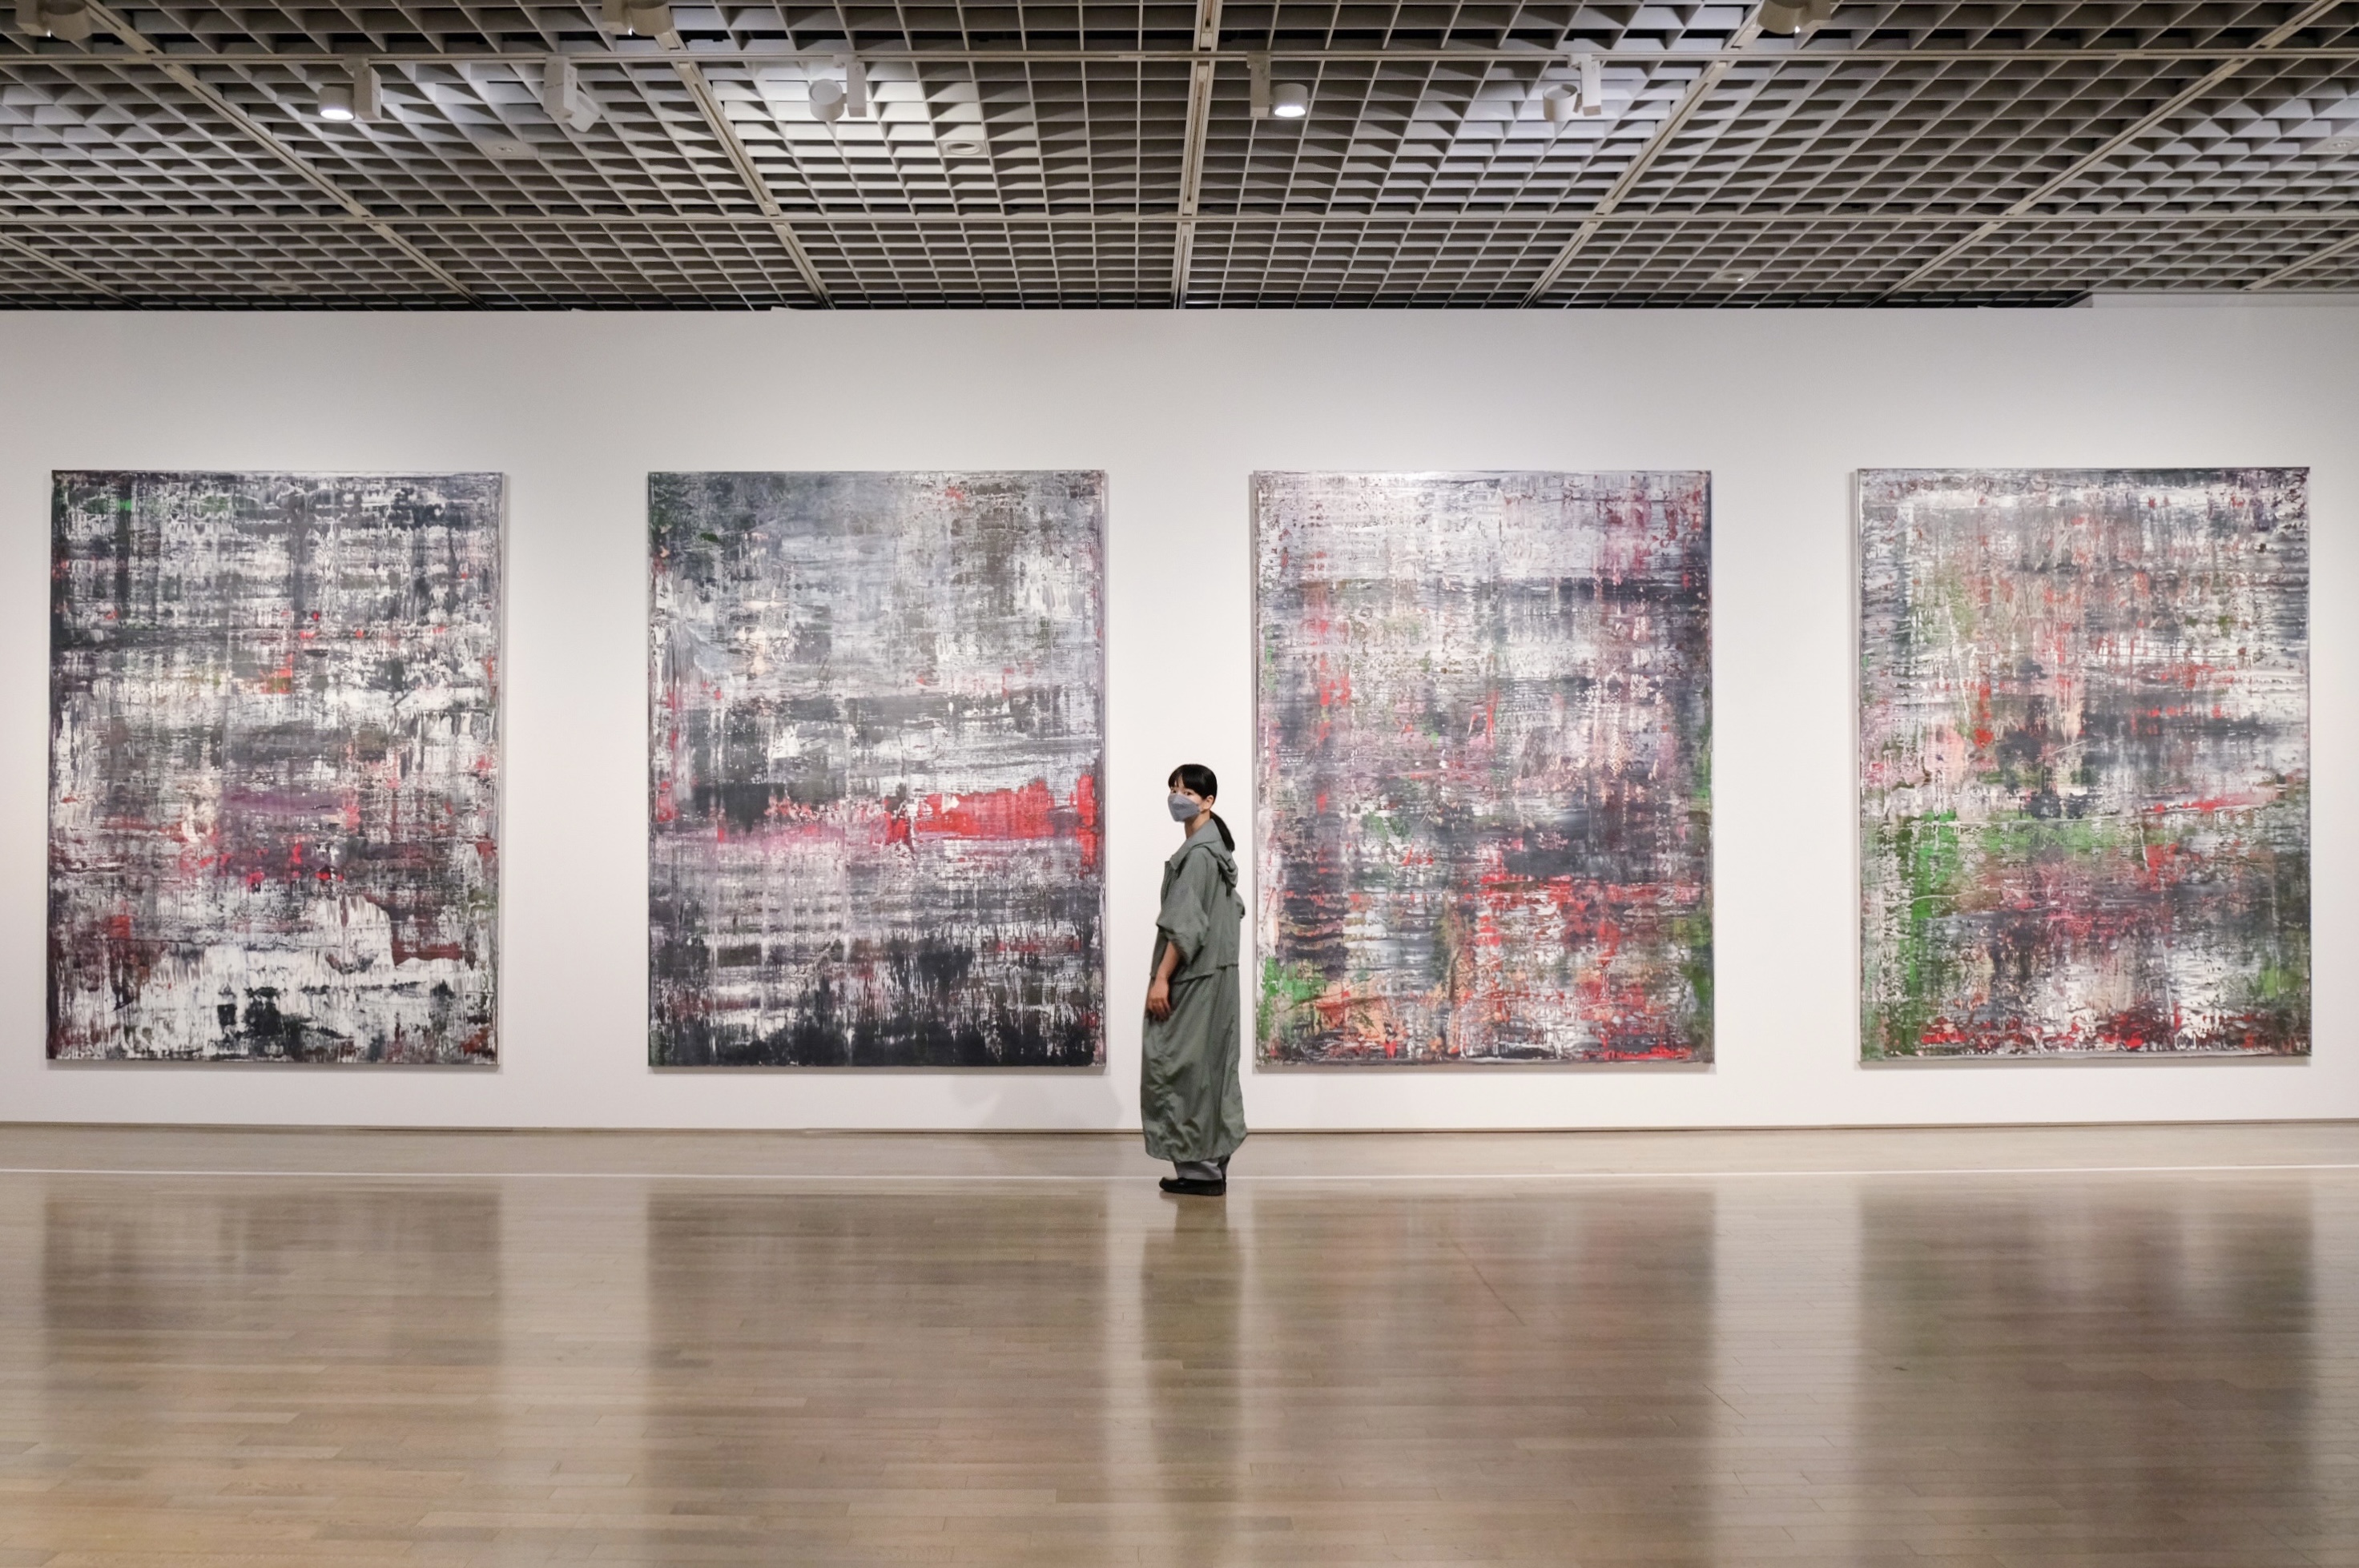 絵画の可能性を提示し続ける巨匠、リヒターの大規模個展「ゲルハルト・リヒター展」